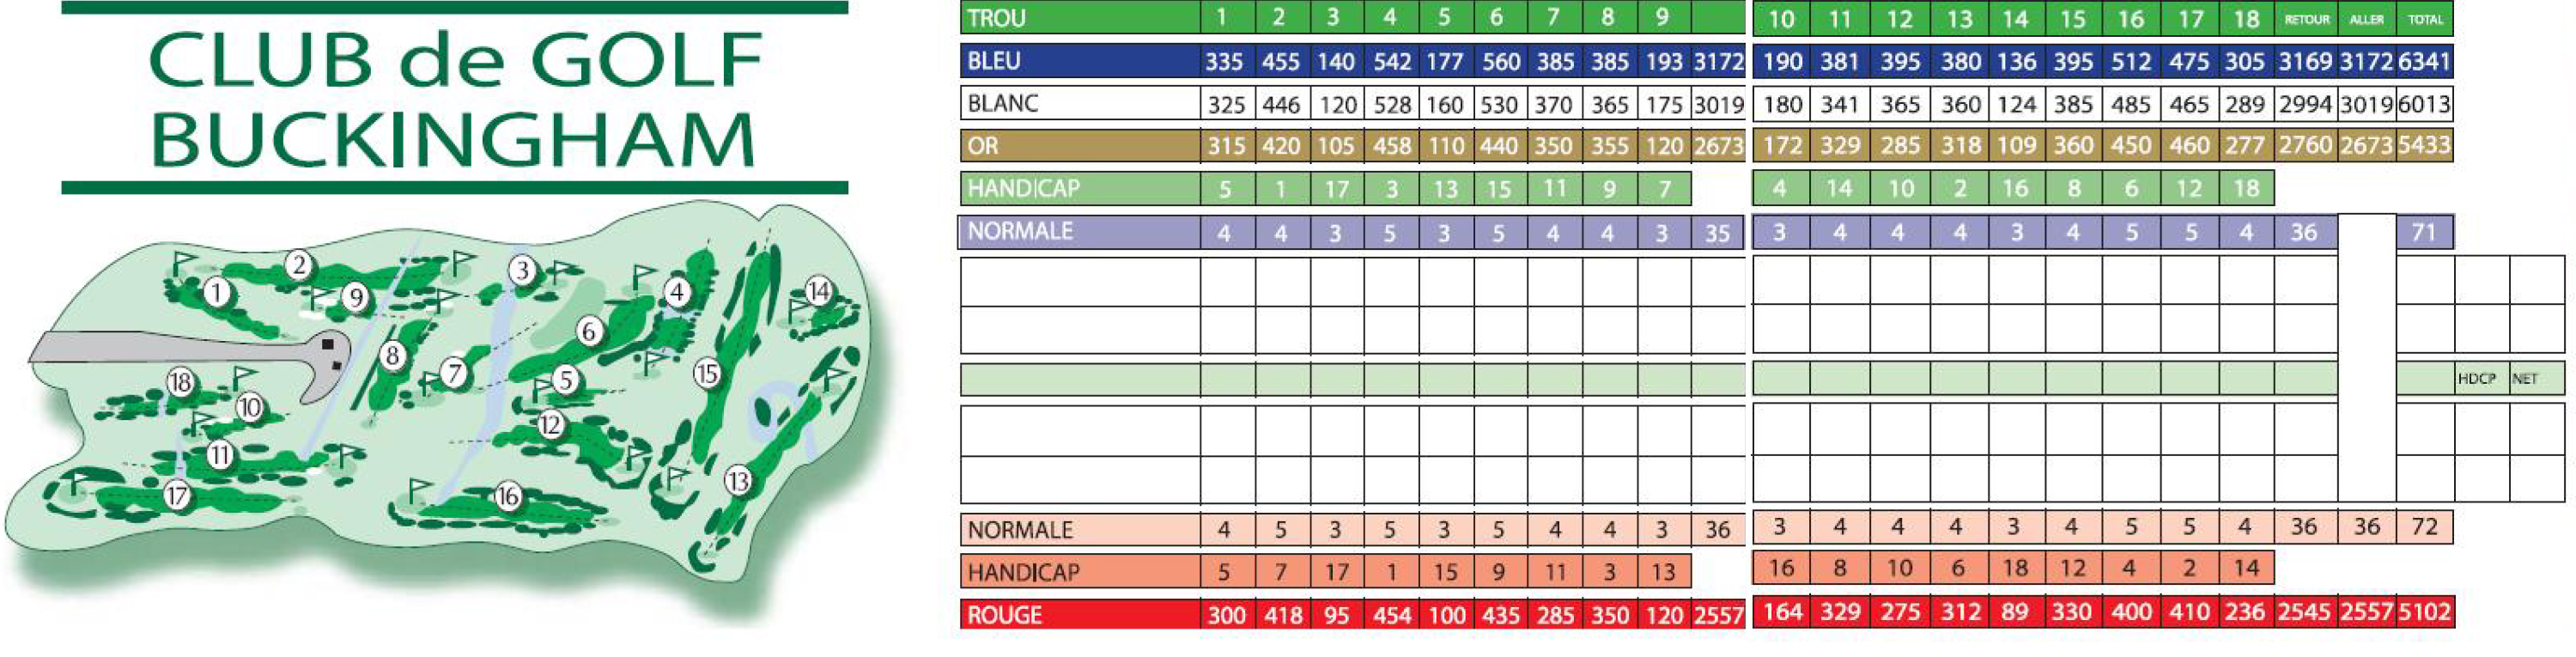 club de golf buckingham score card _ golf software